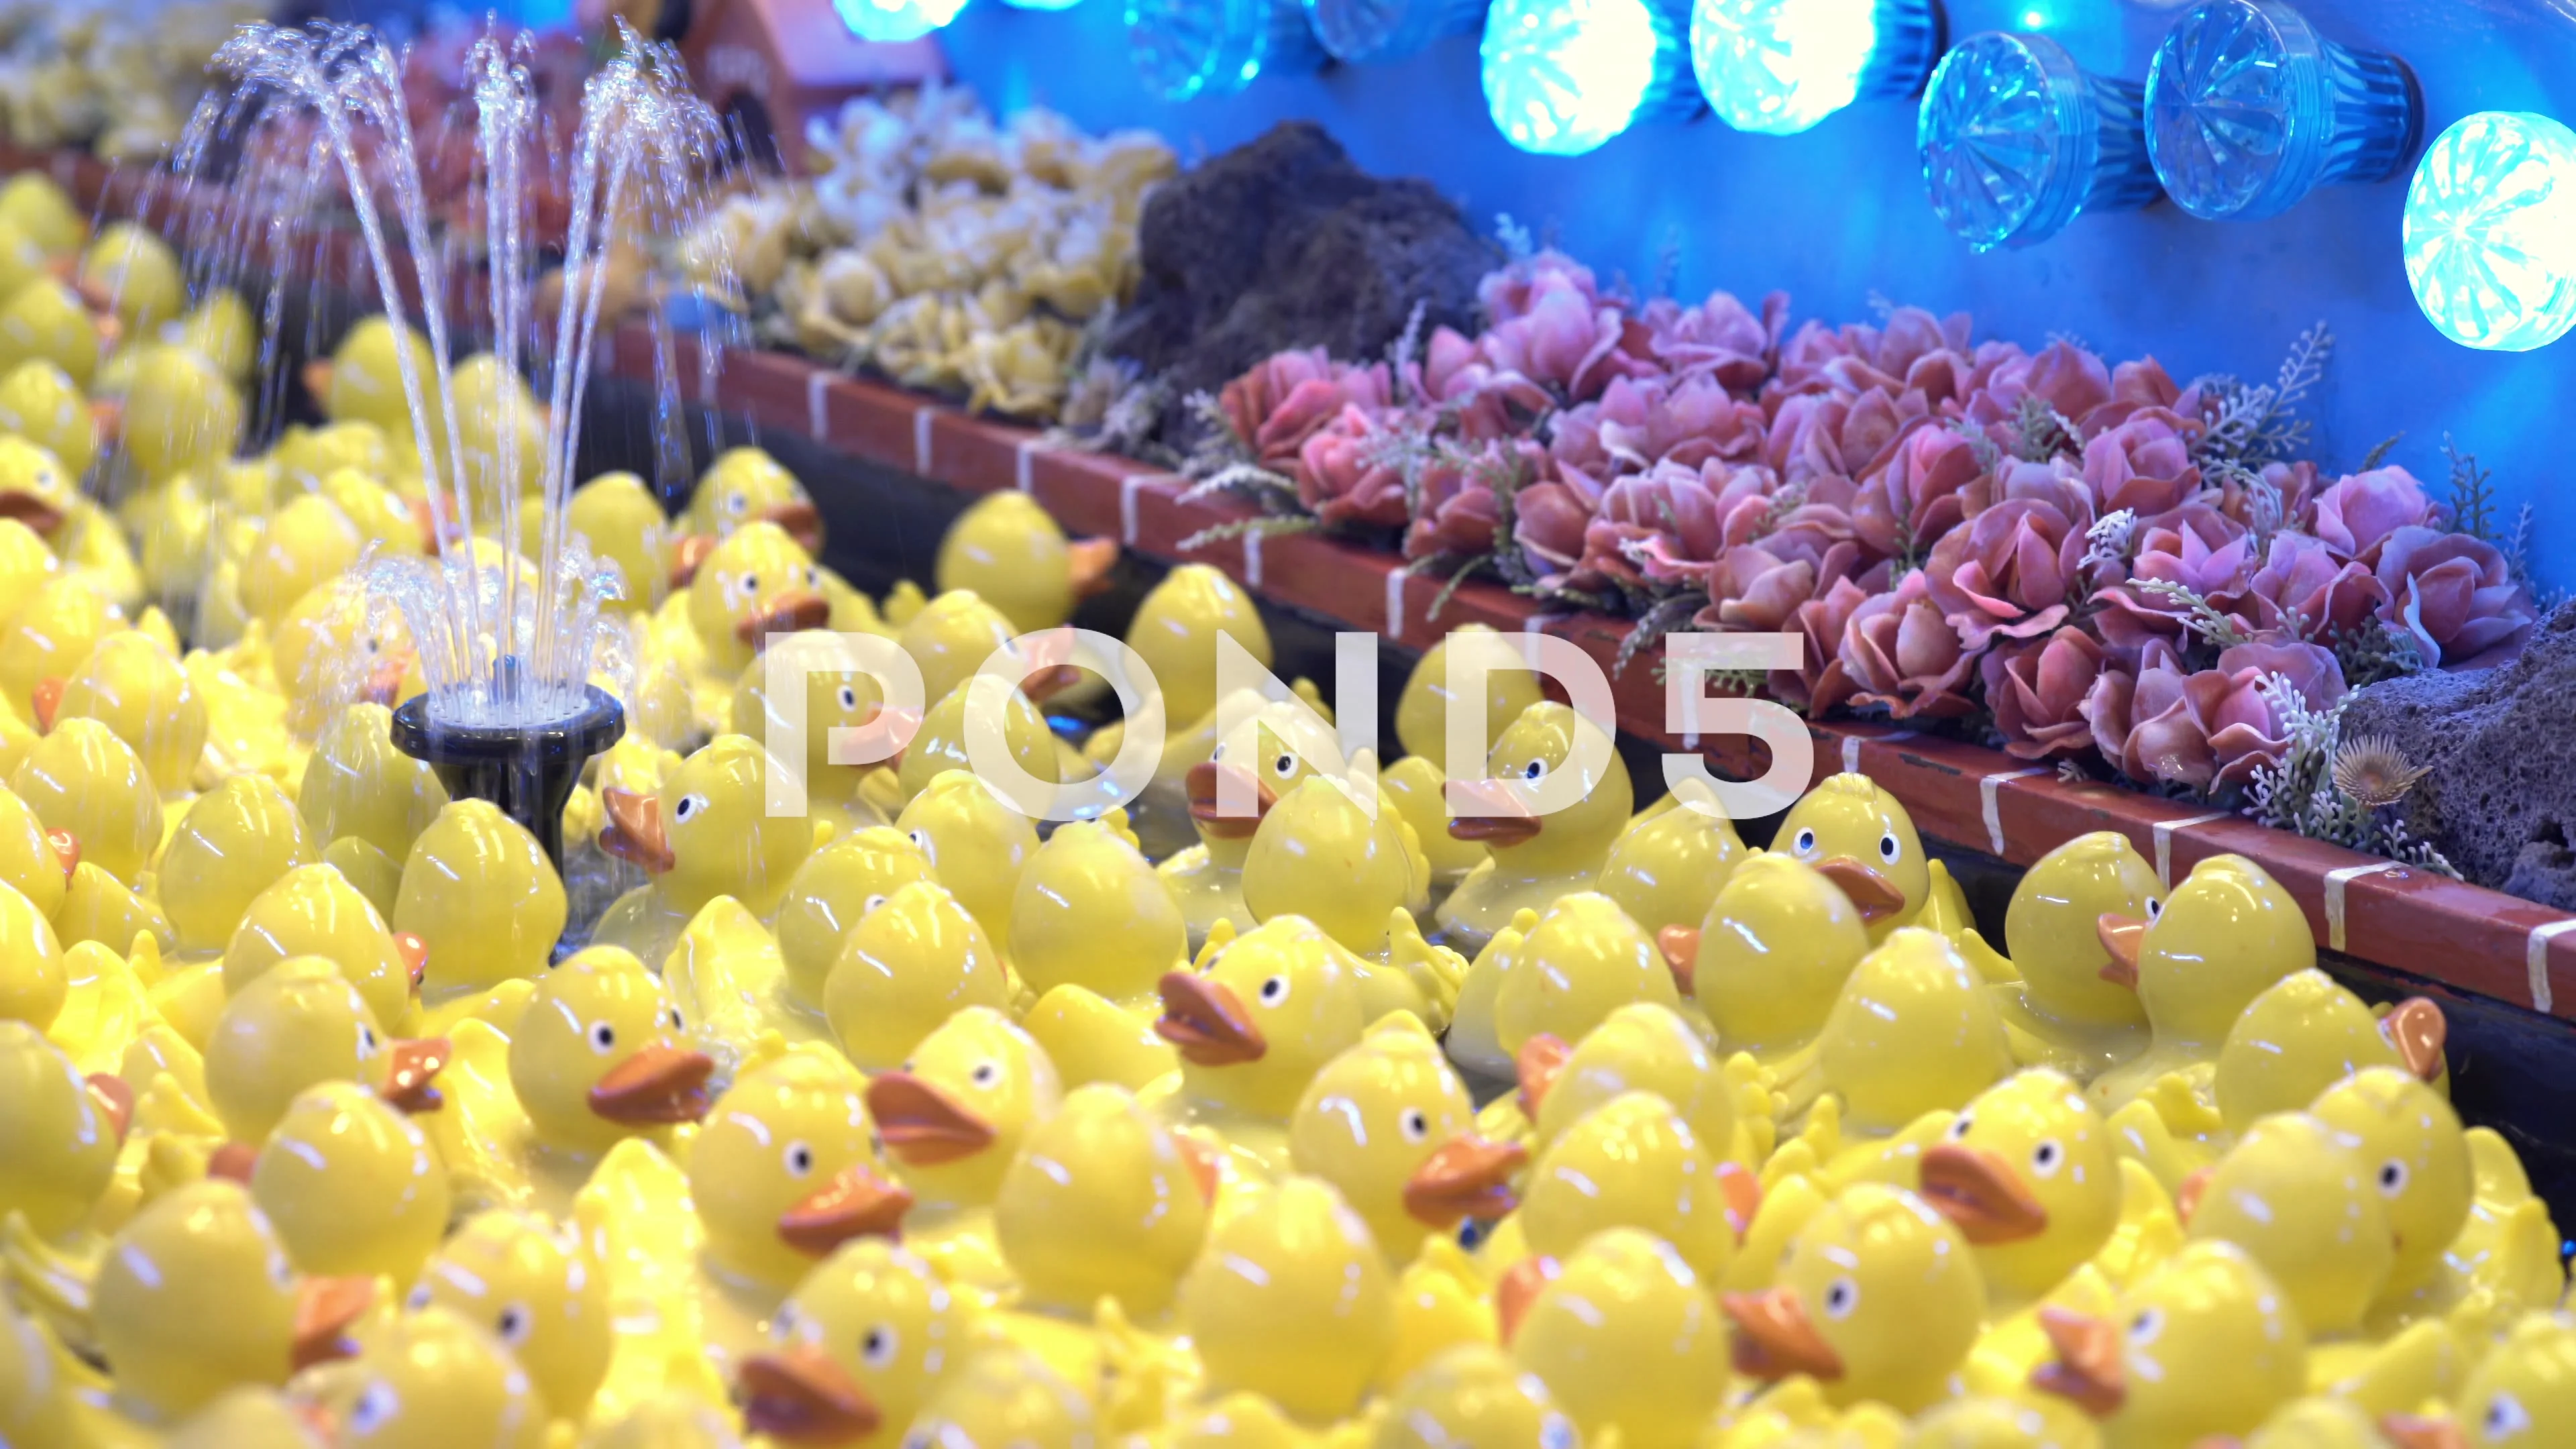 https://images.pond5.com/rubber-ducks-floating-carnival-game-footage-068300218_prevstill.jpeg